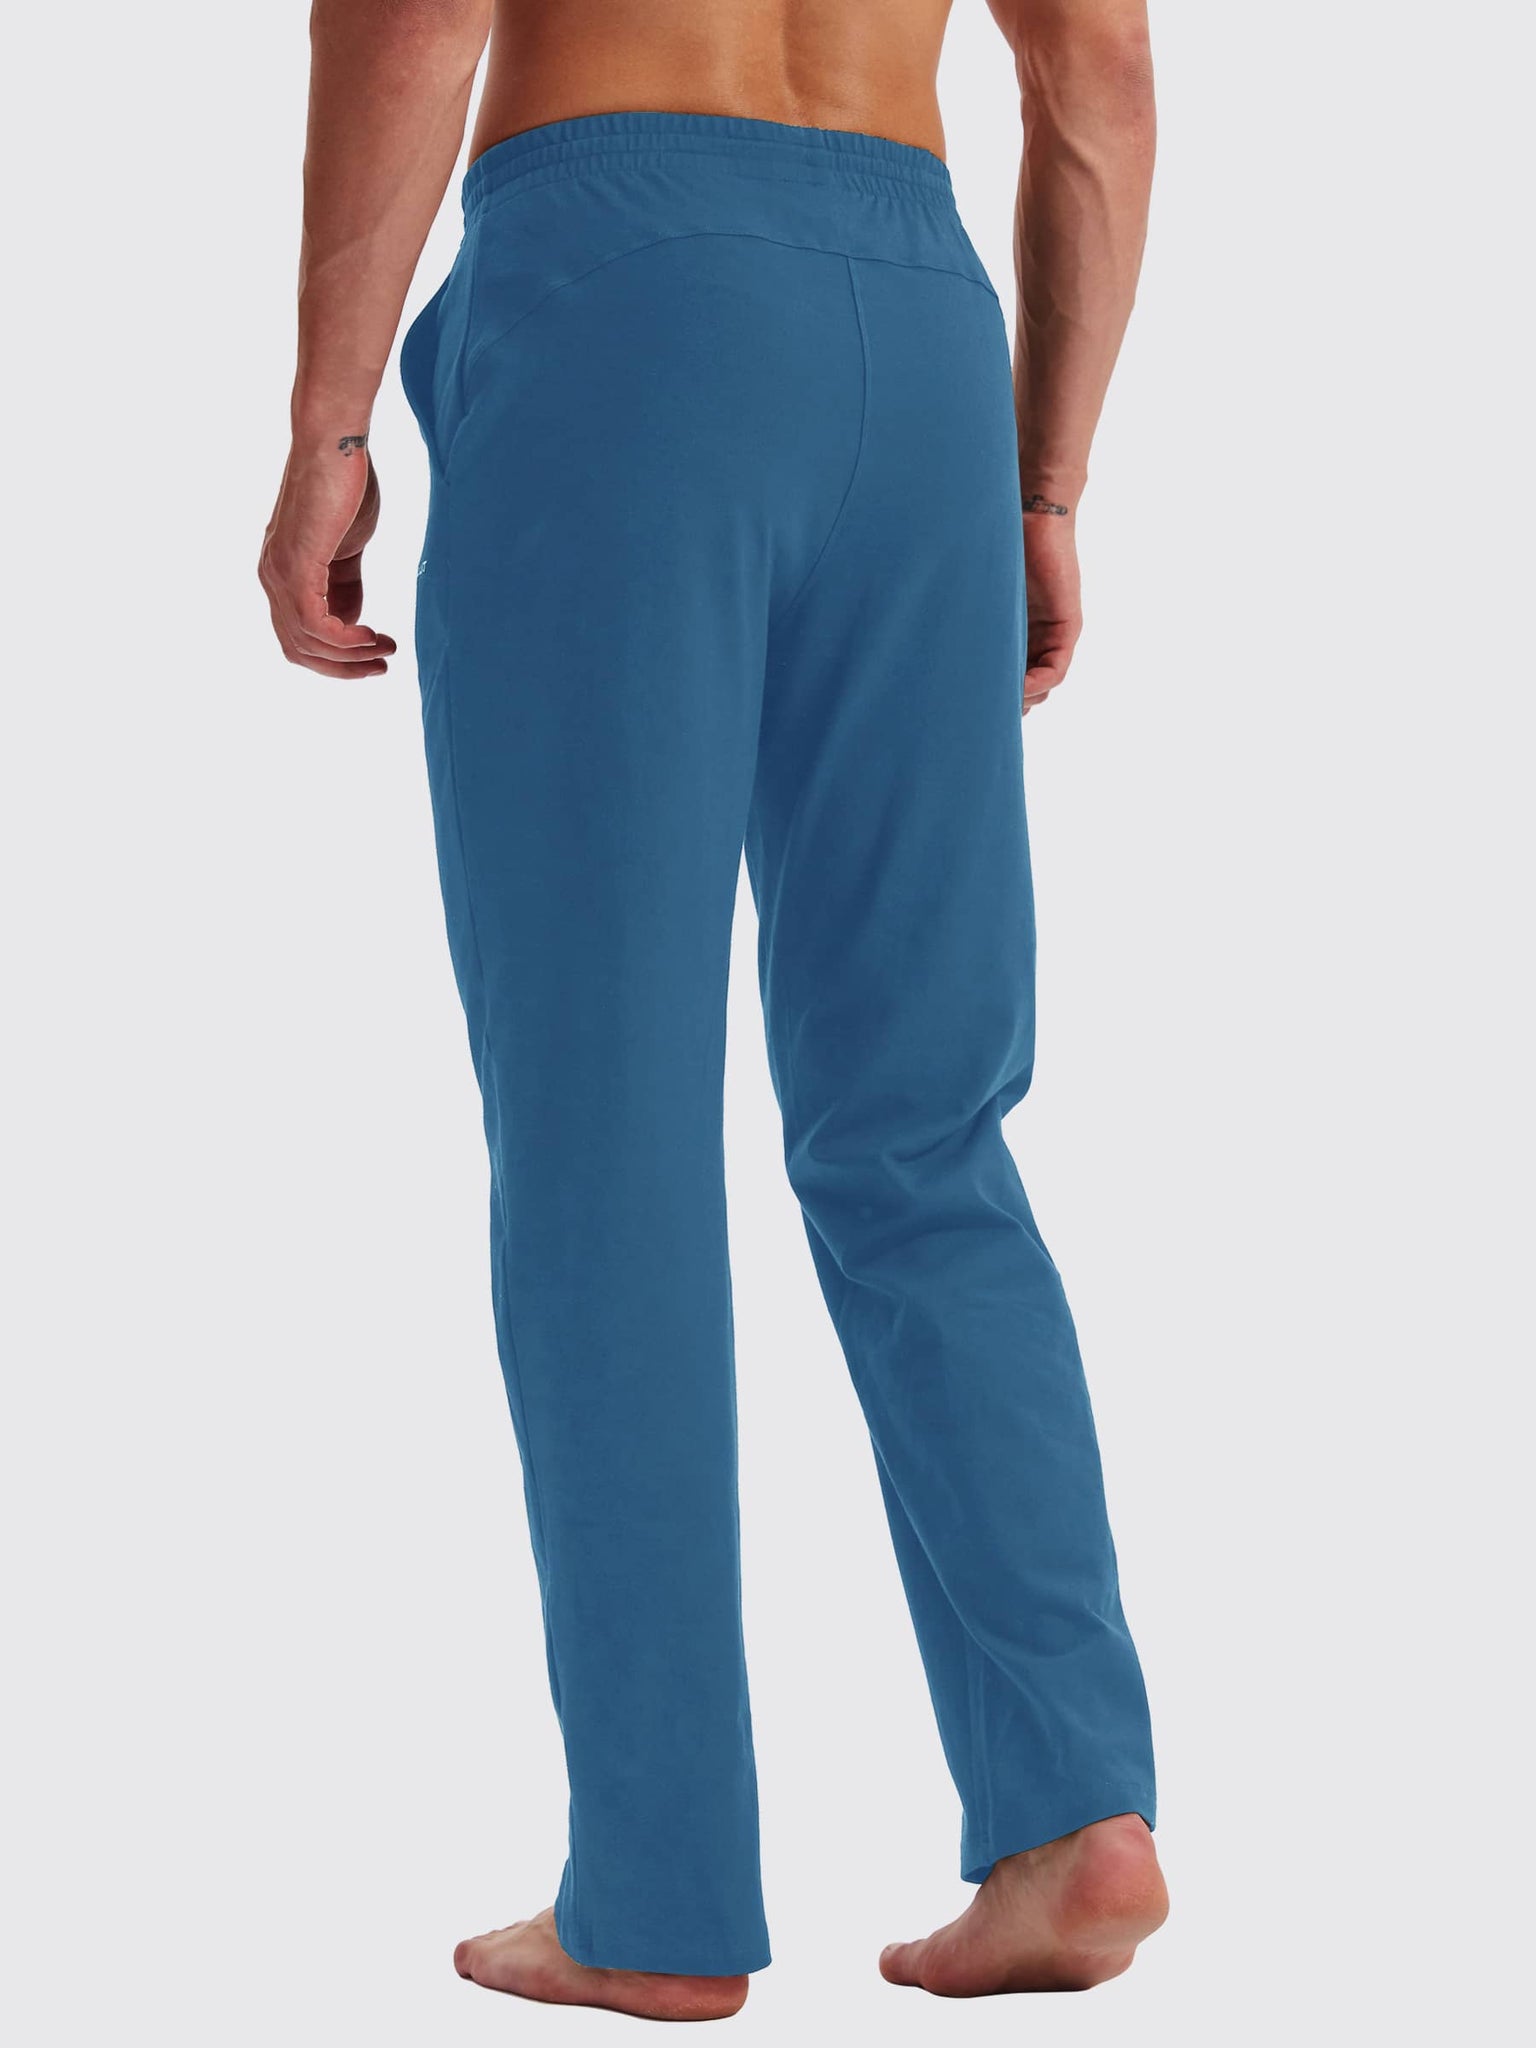 Men's Cotton Yoga Balance Sweatpants_Blue_model5